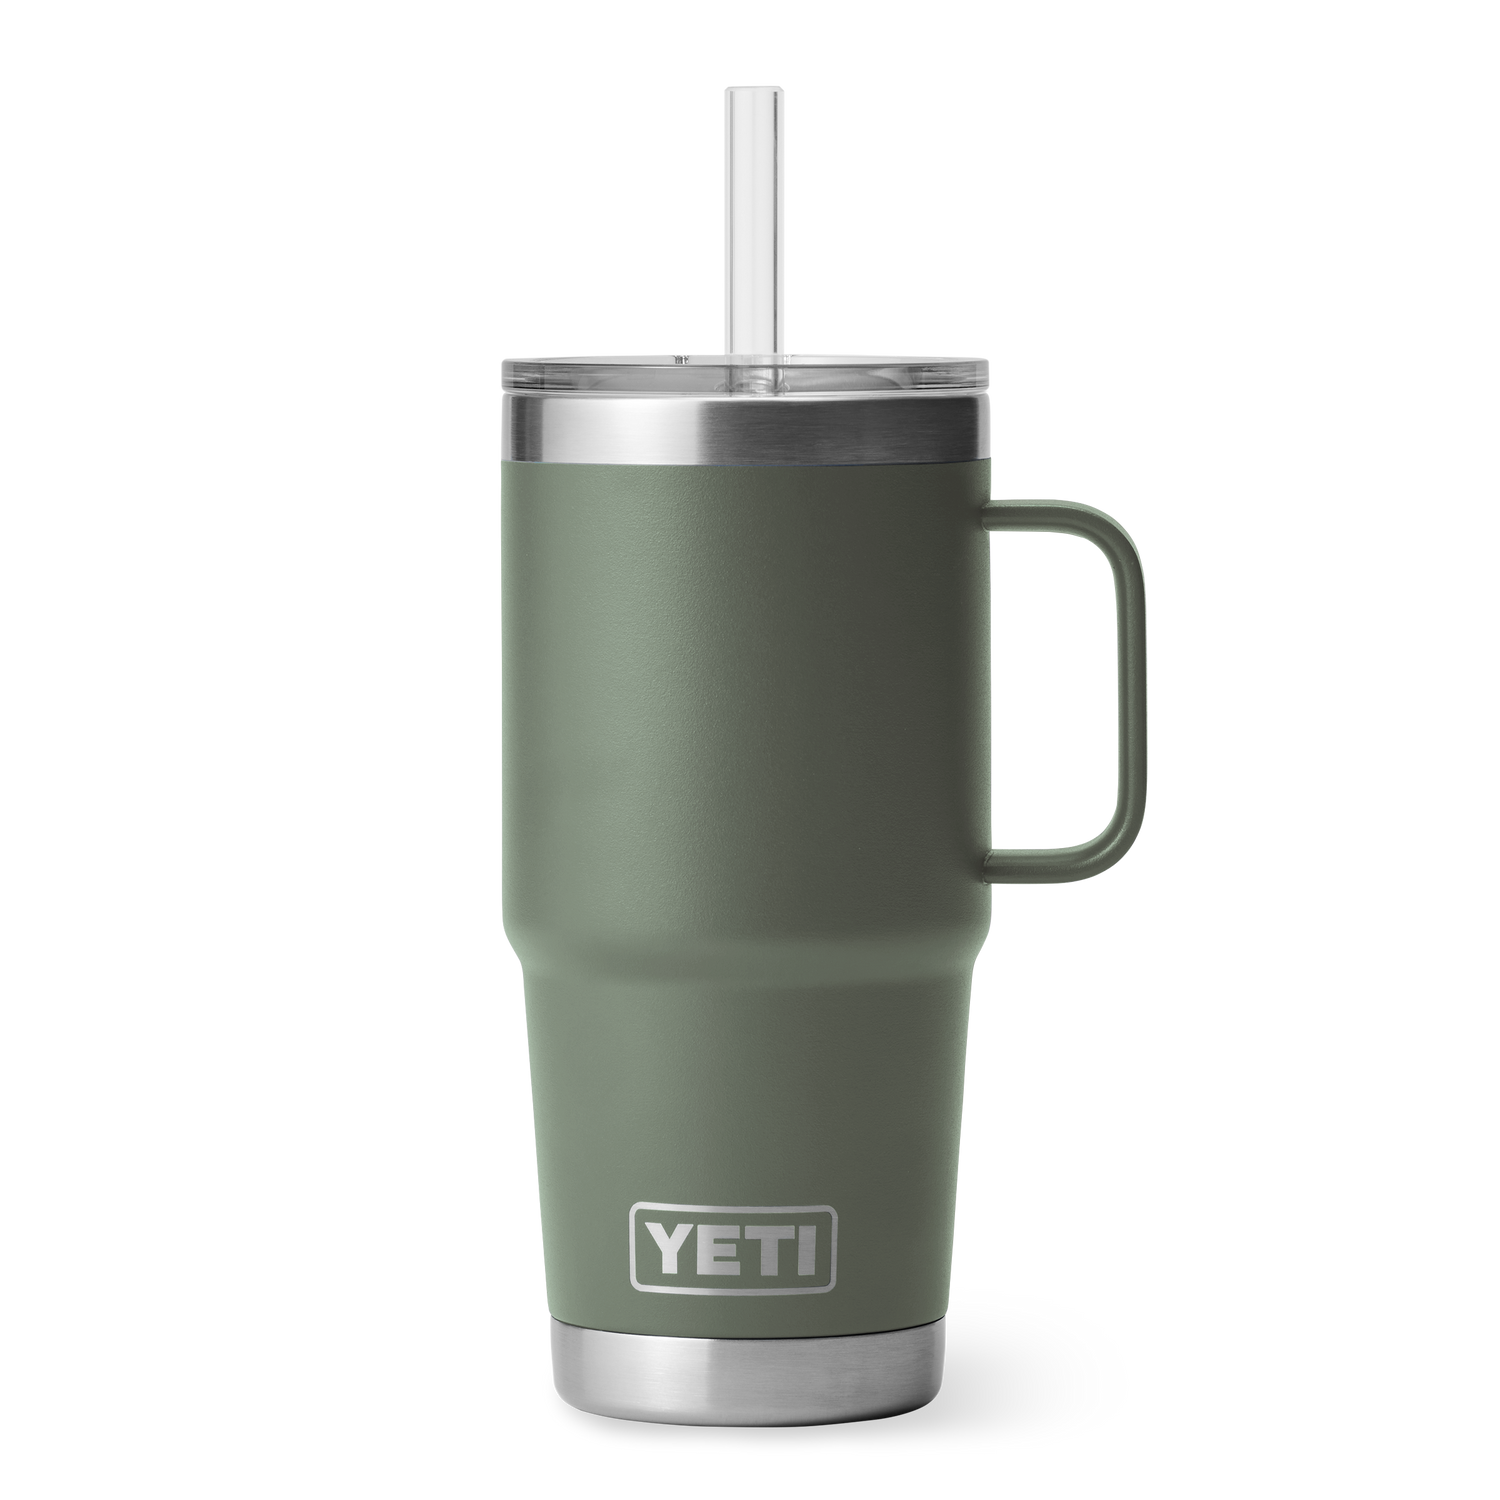 Yeti Rambler 42 oz Straw Mug (Navy)